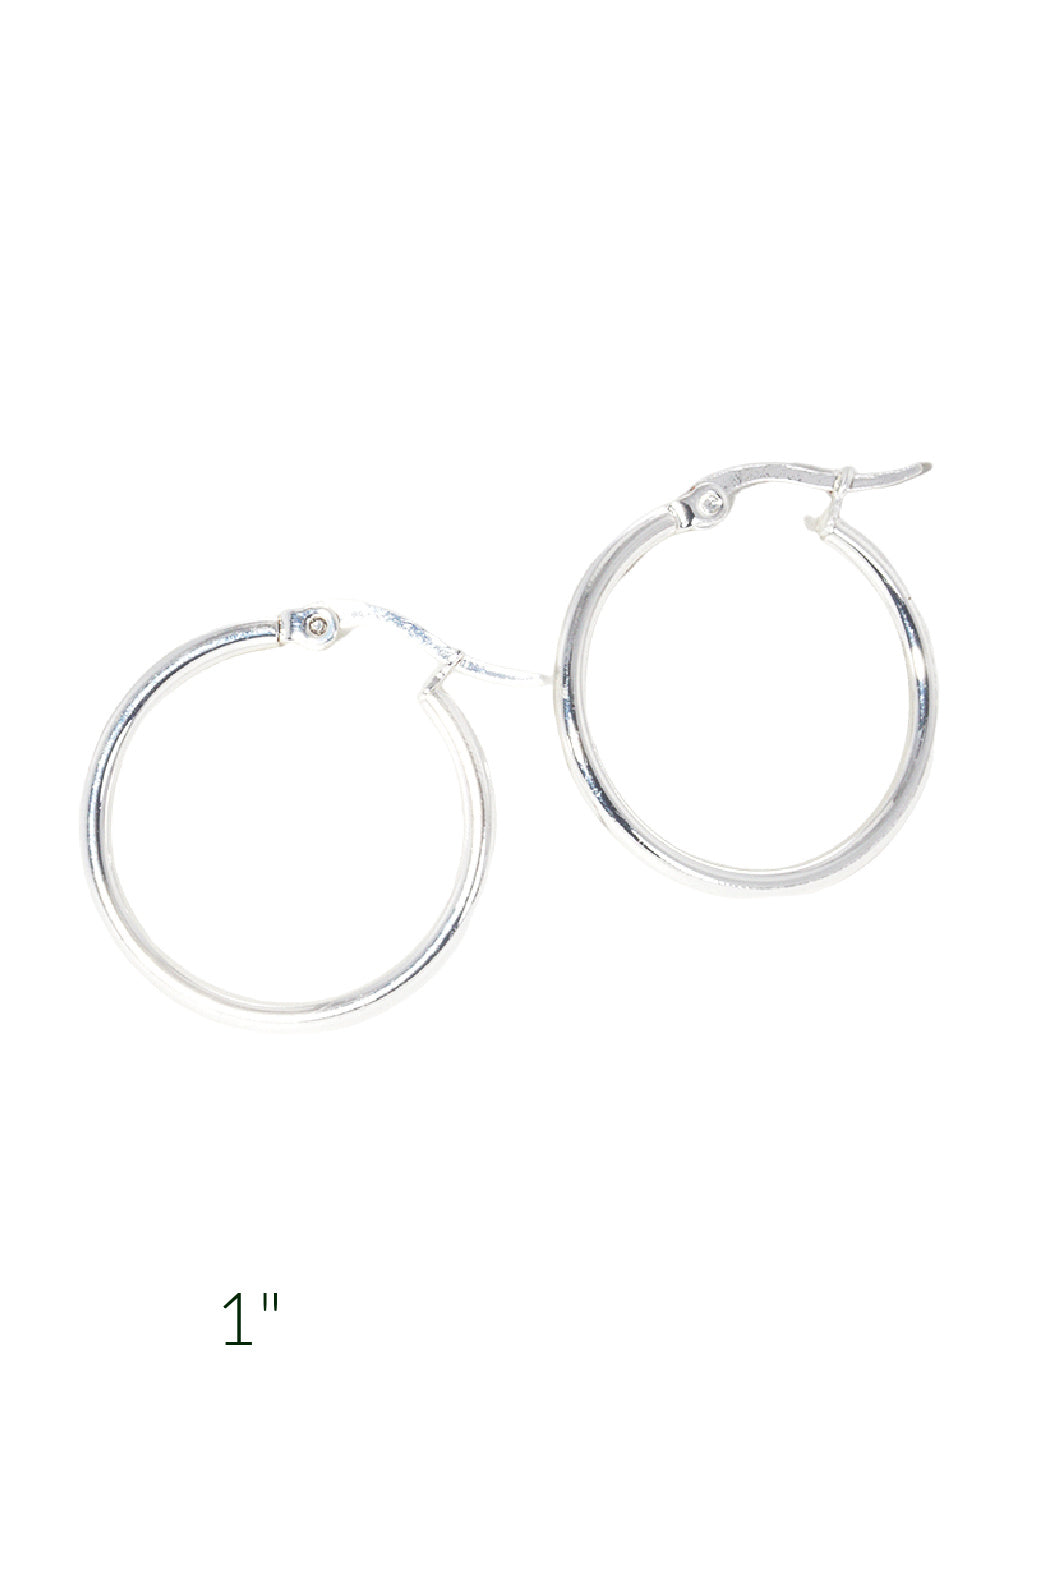 1" Gold / Silver Hoop Earrings